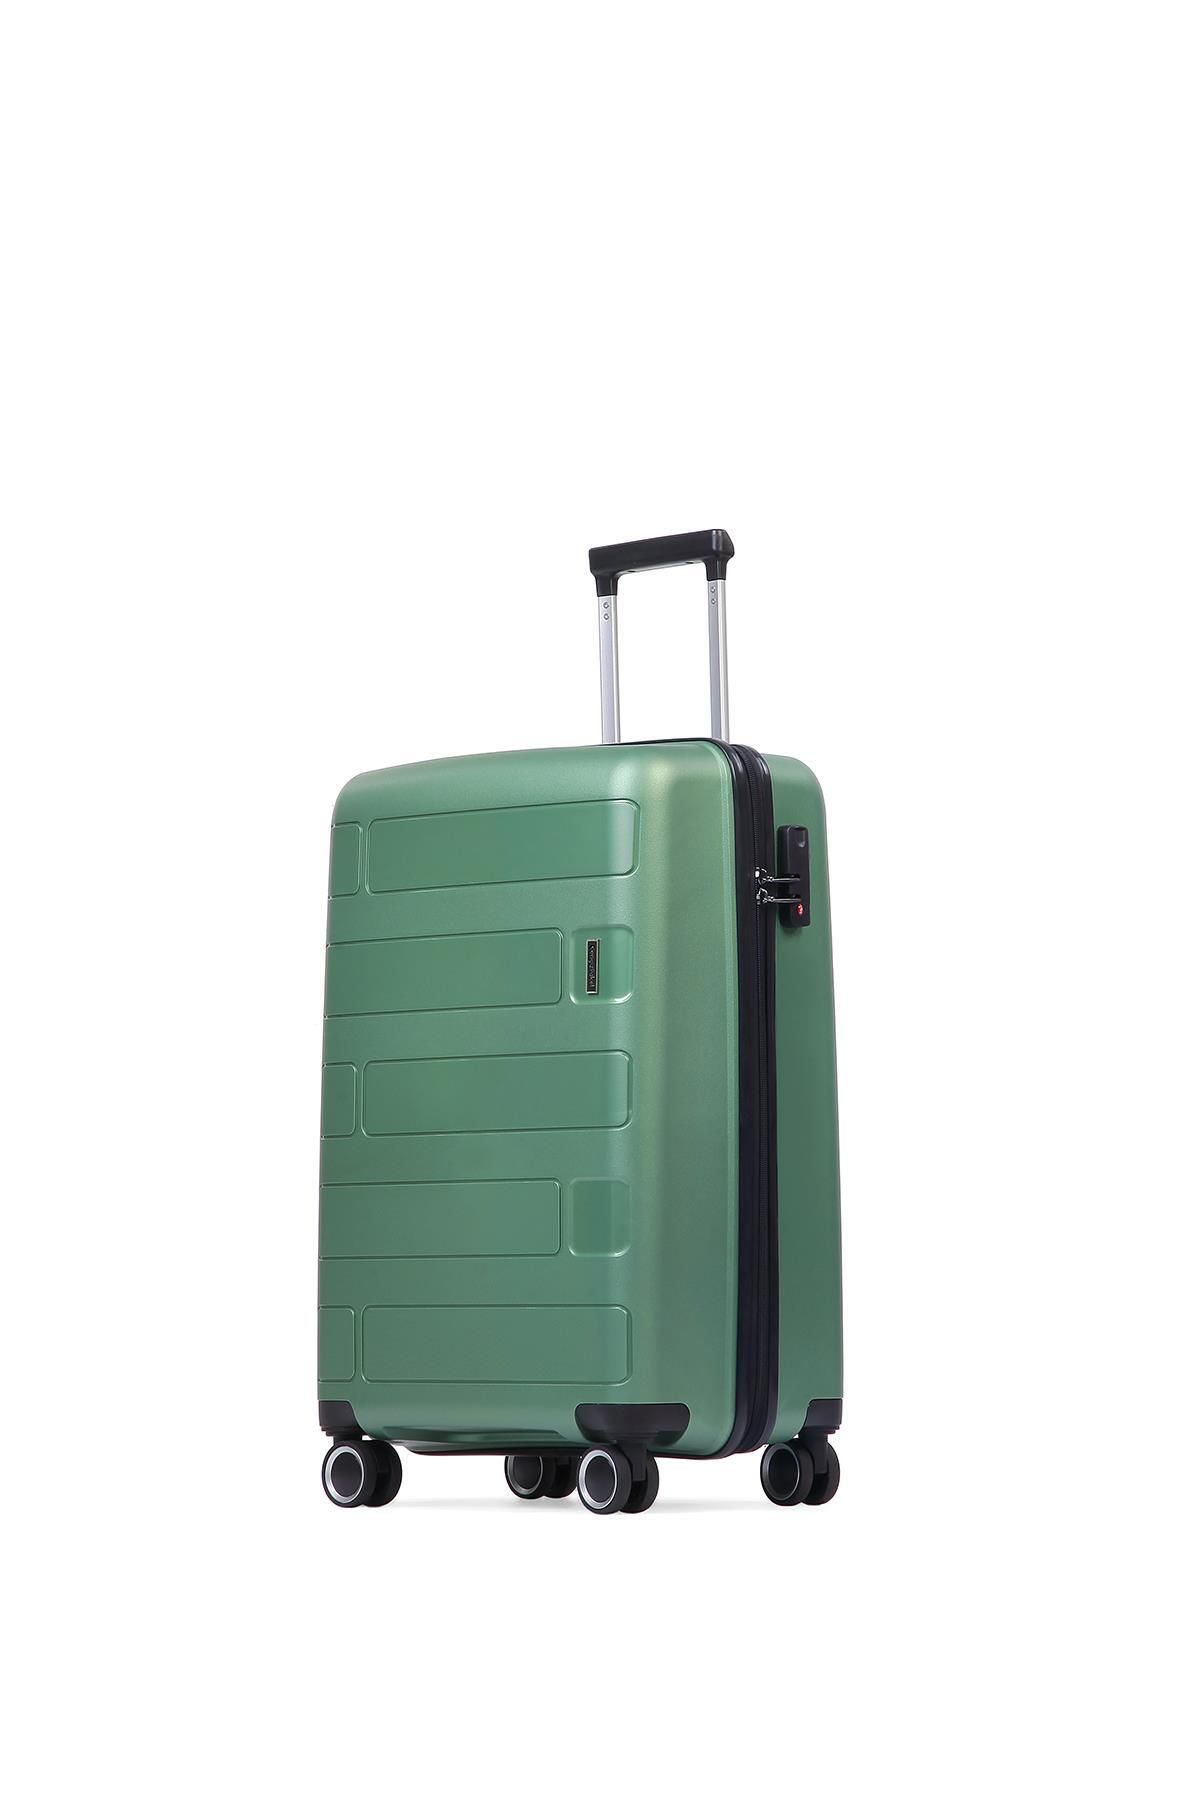 Cengiz Pakel Polipropilen Kabin Boy Valiz - 232cp102 - Yeşil